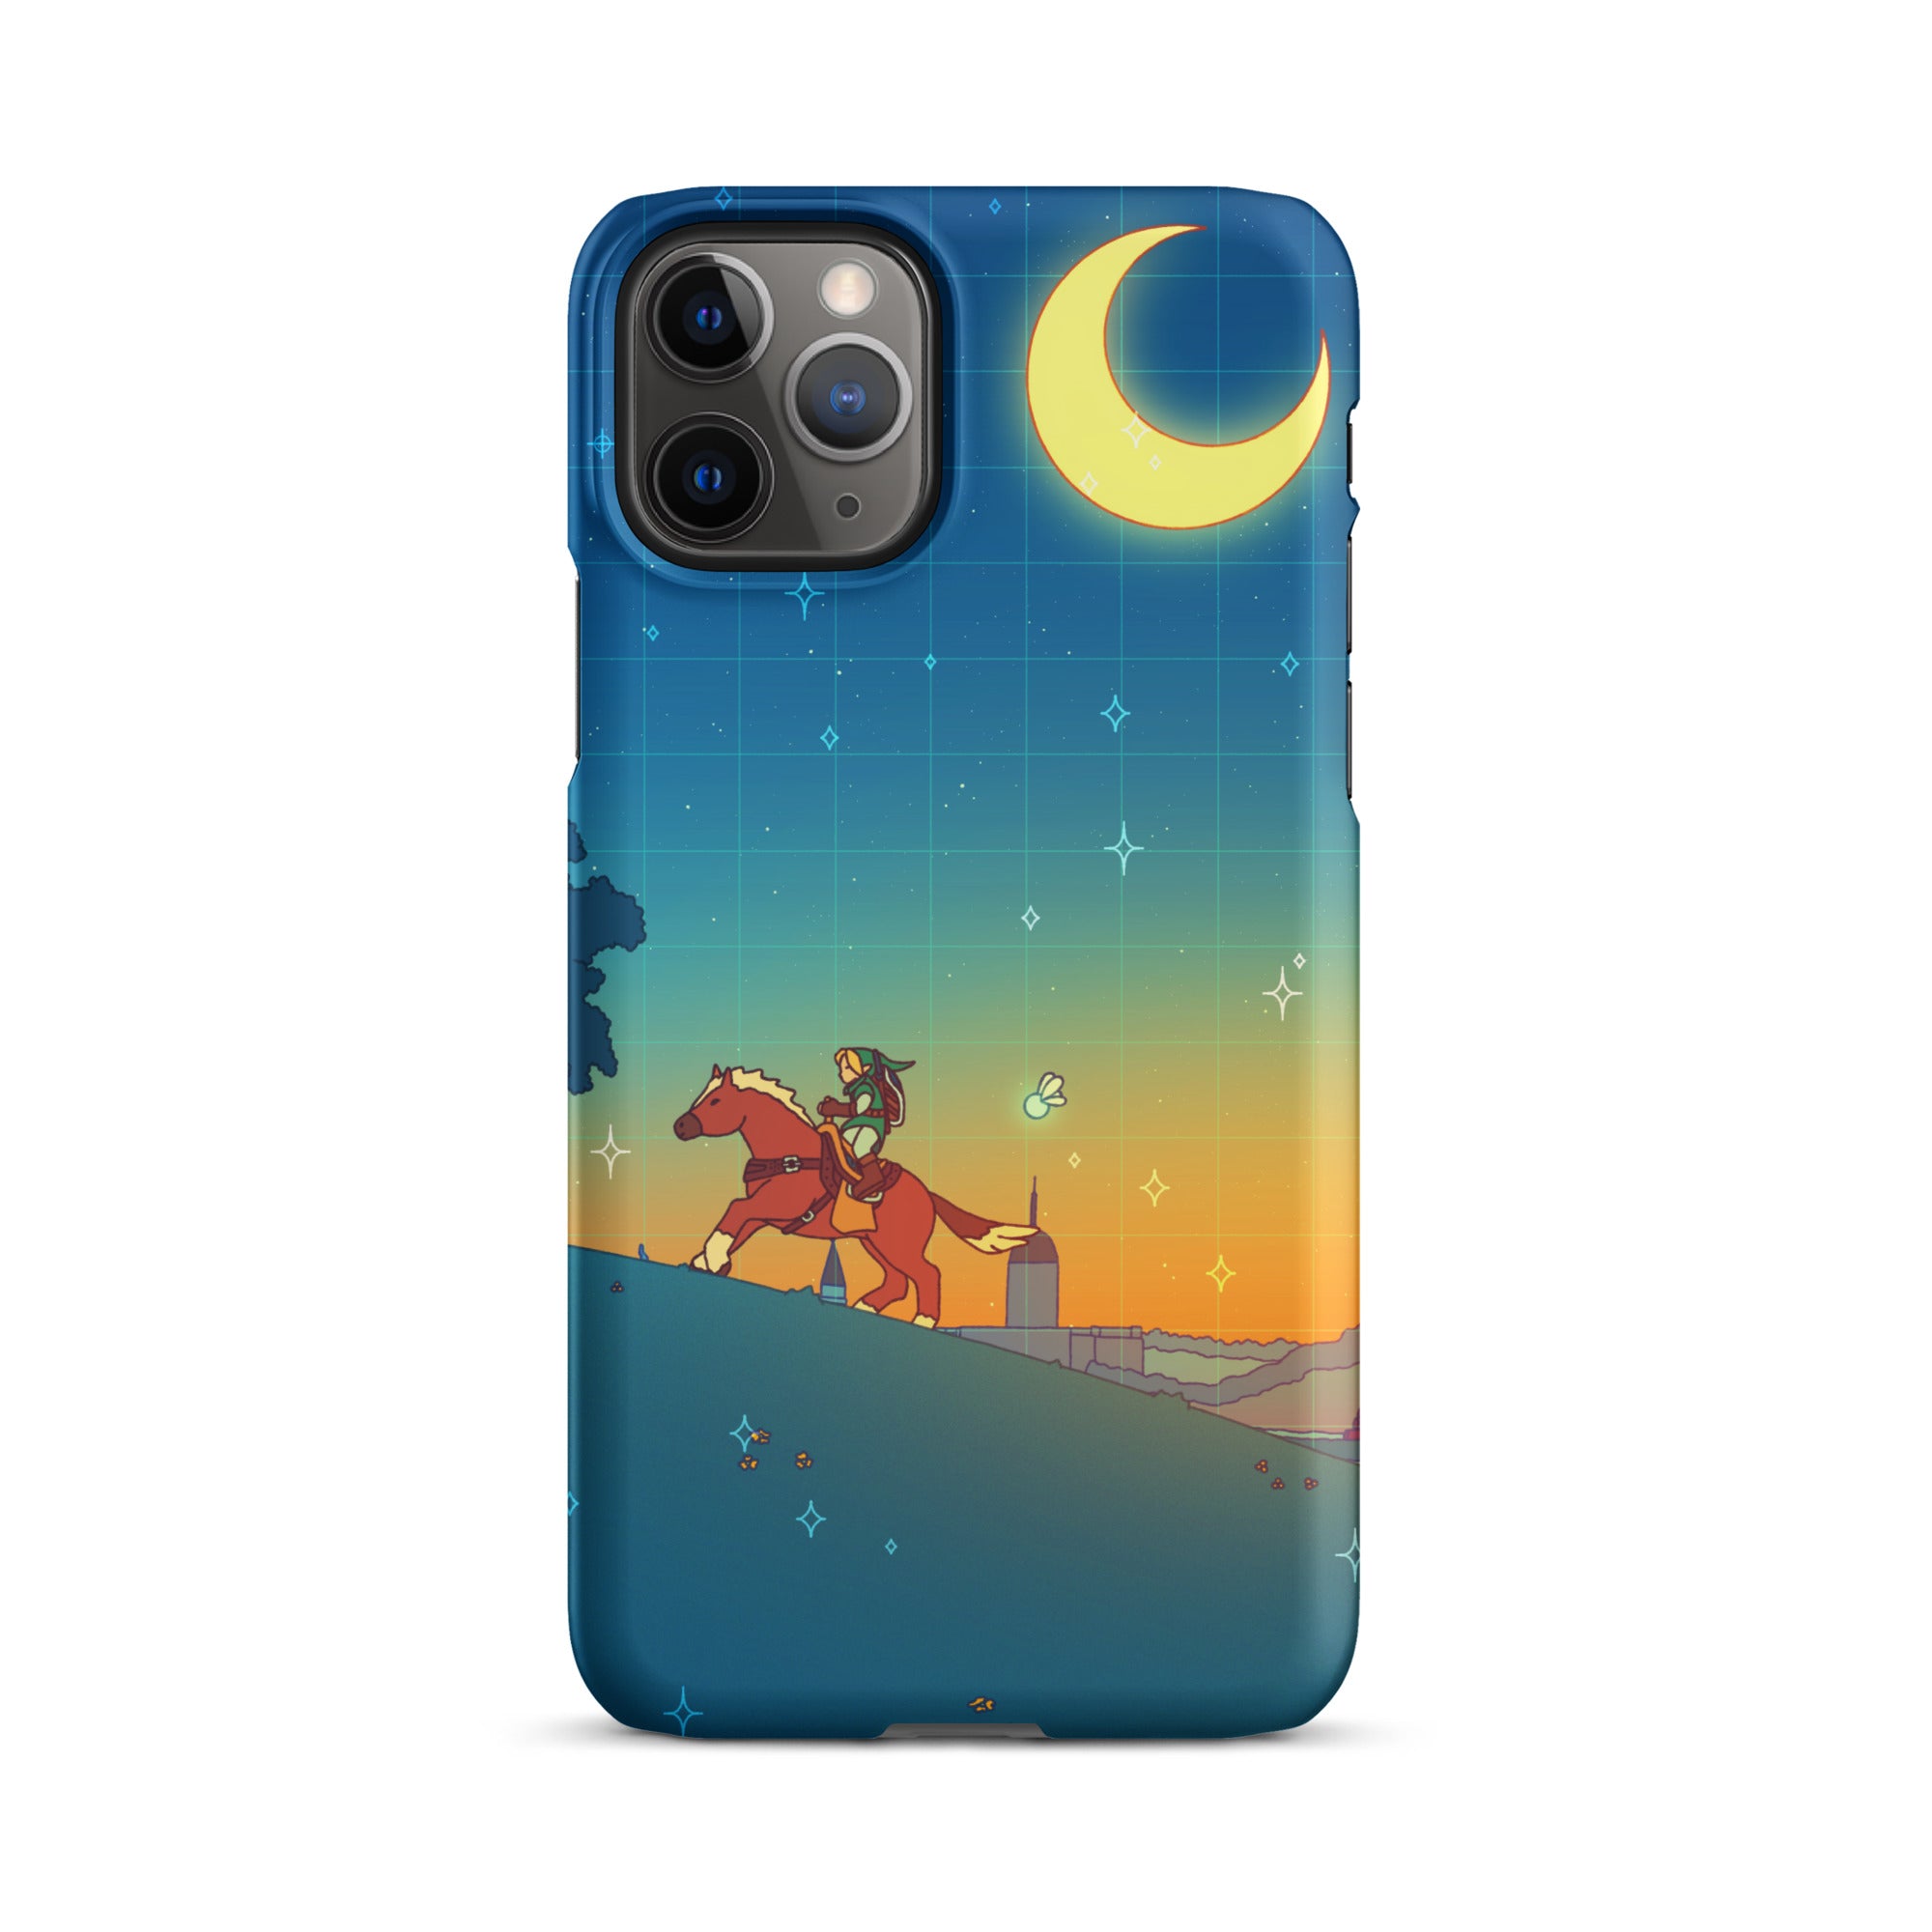 Ocarina Hill iPhone Case